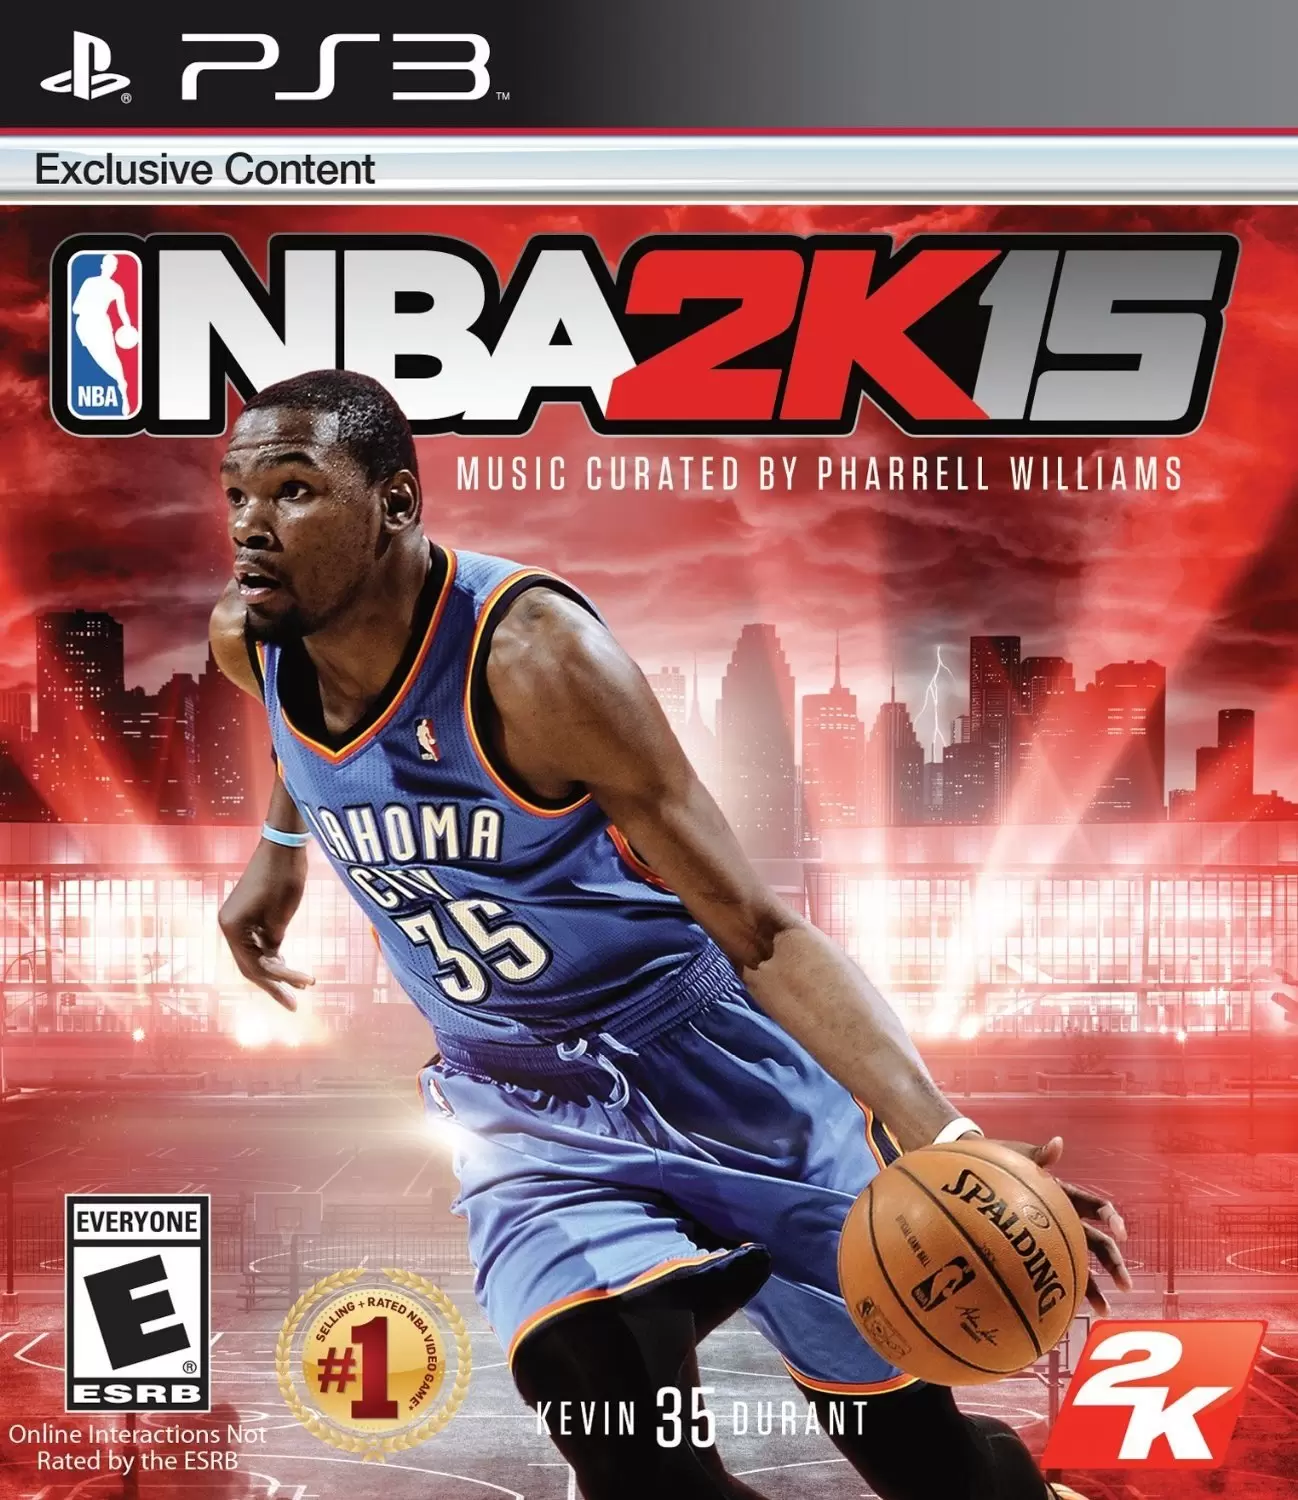 PS3 Games - NBA 2K15